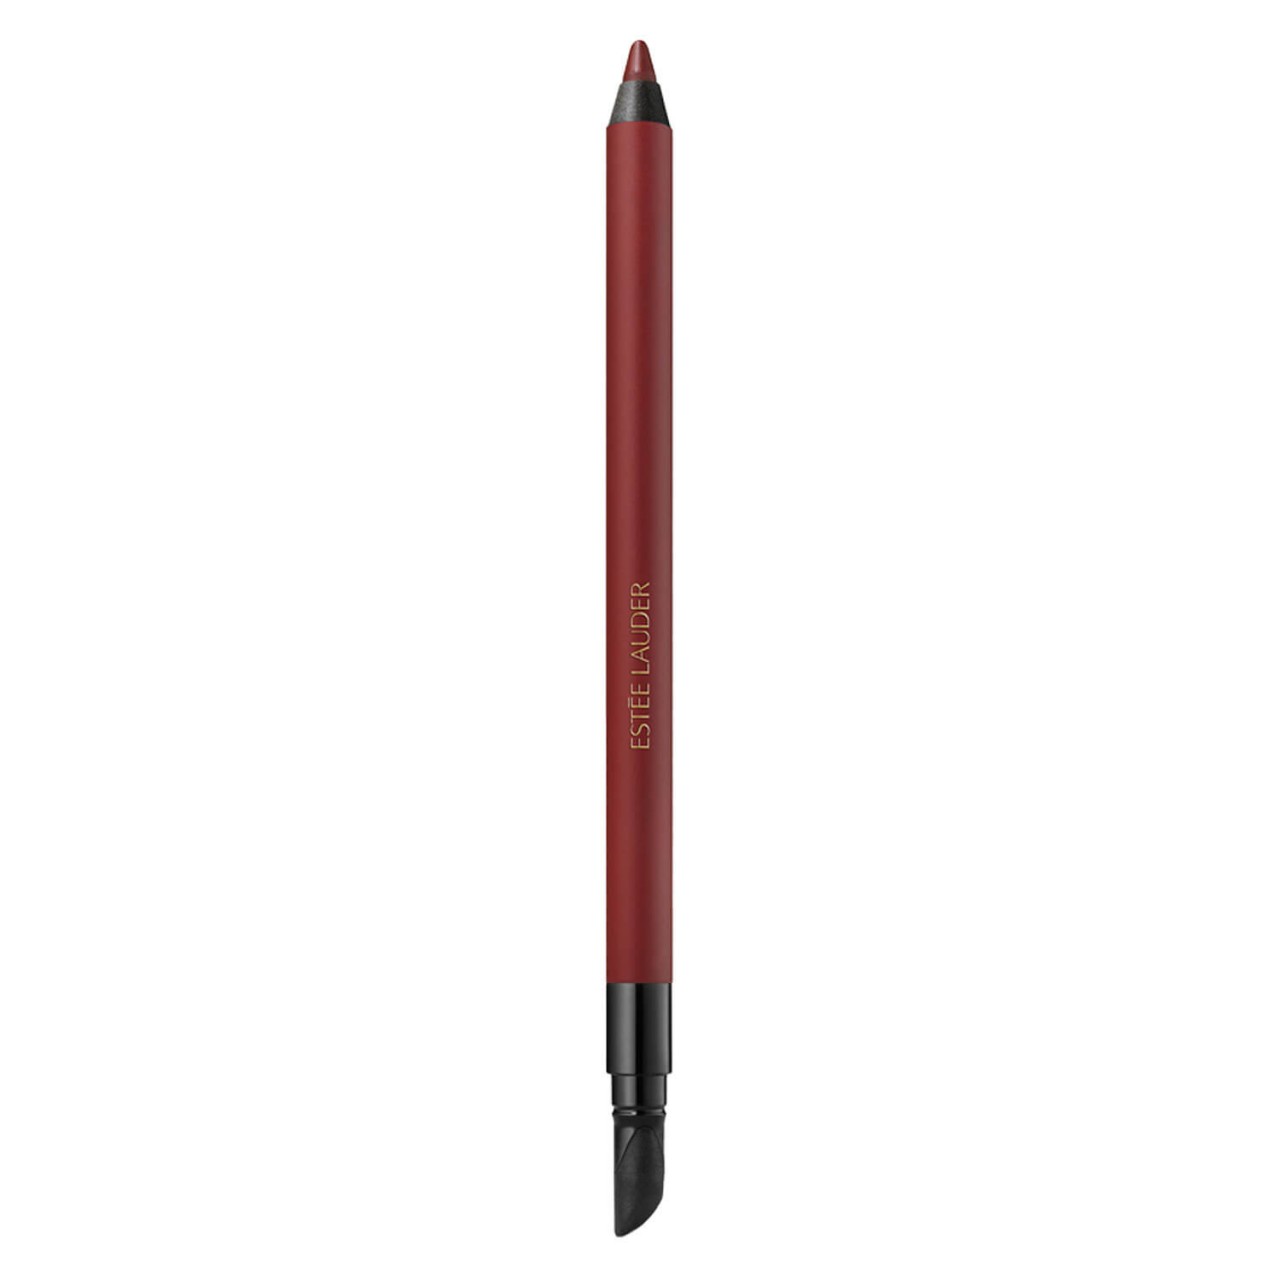 Double Wear - 24H Waterproof Gel Eye Pencil Antique Burgundy